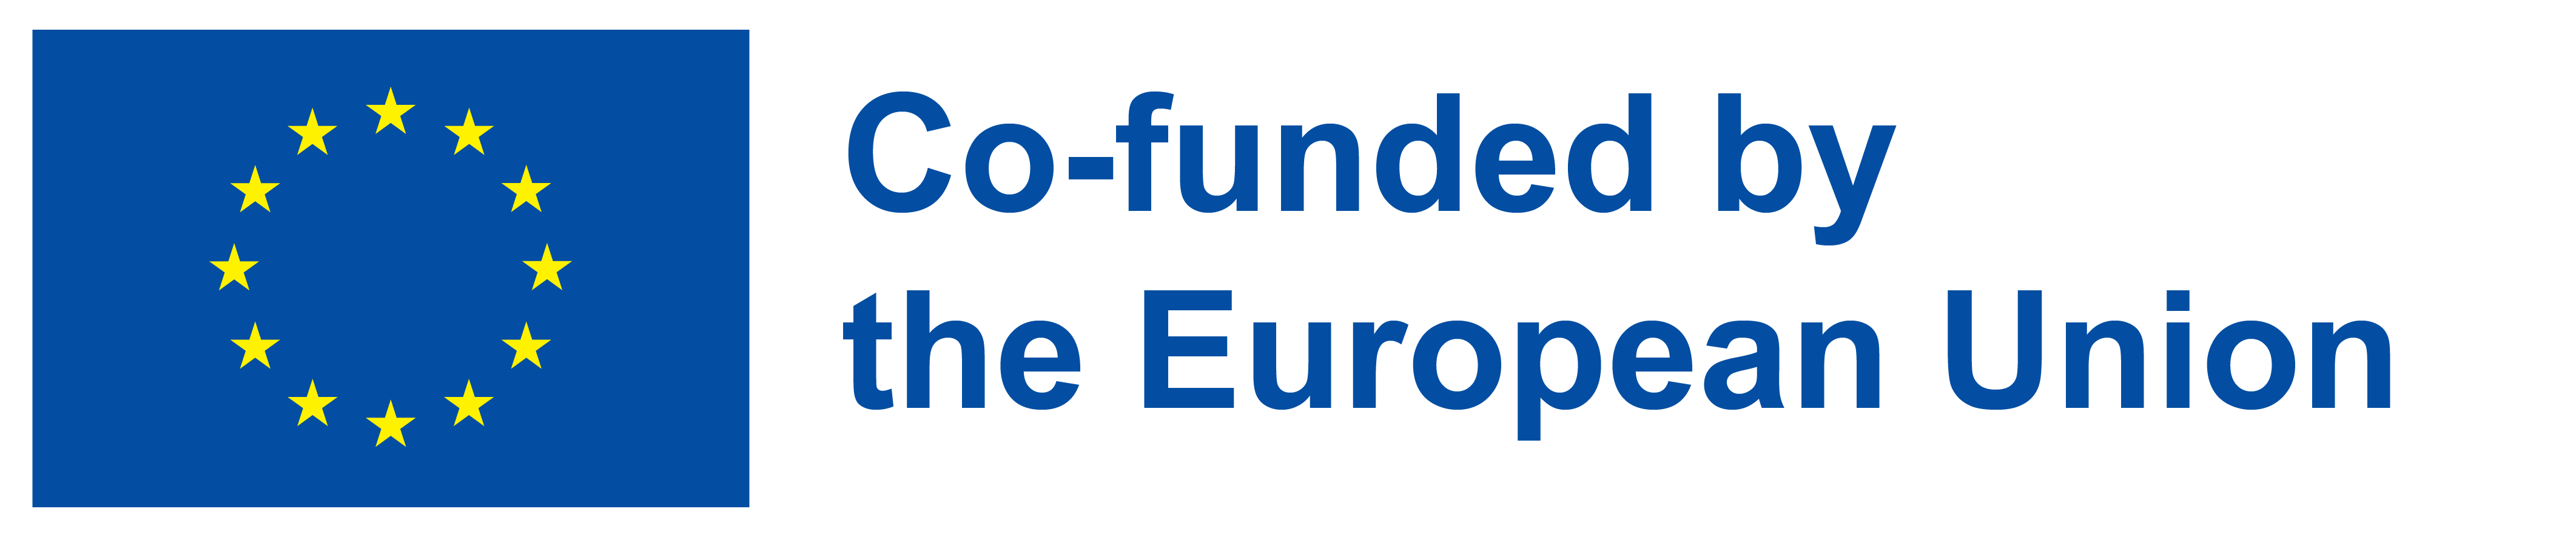 EU co-funding flag